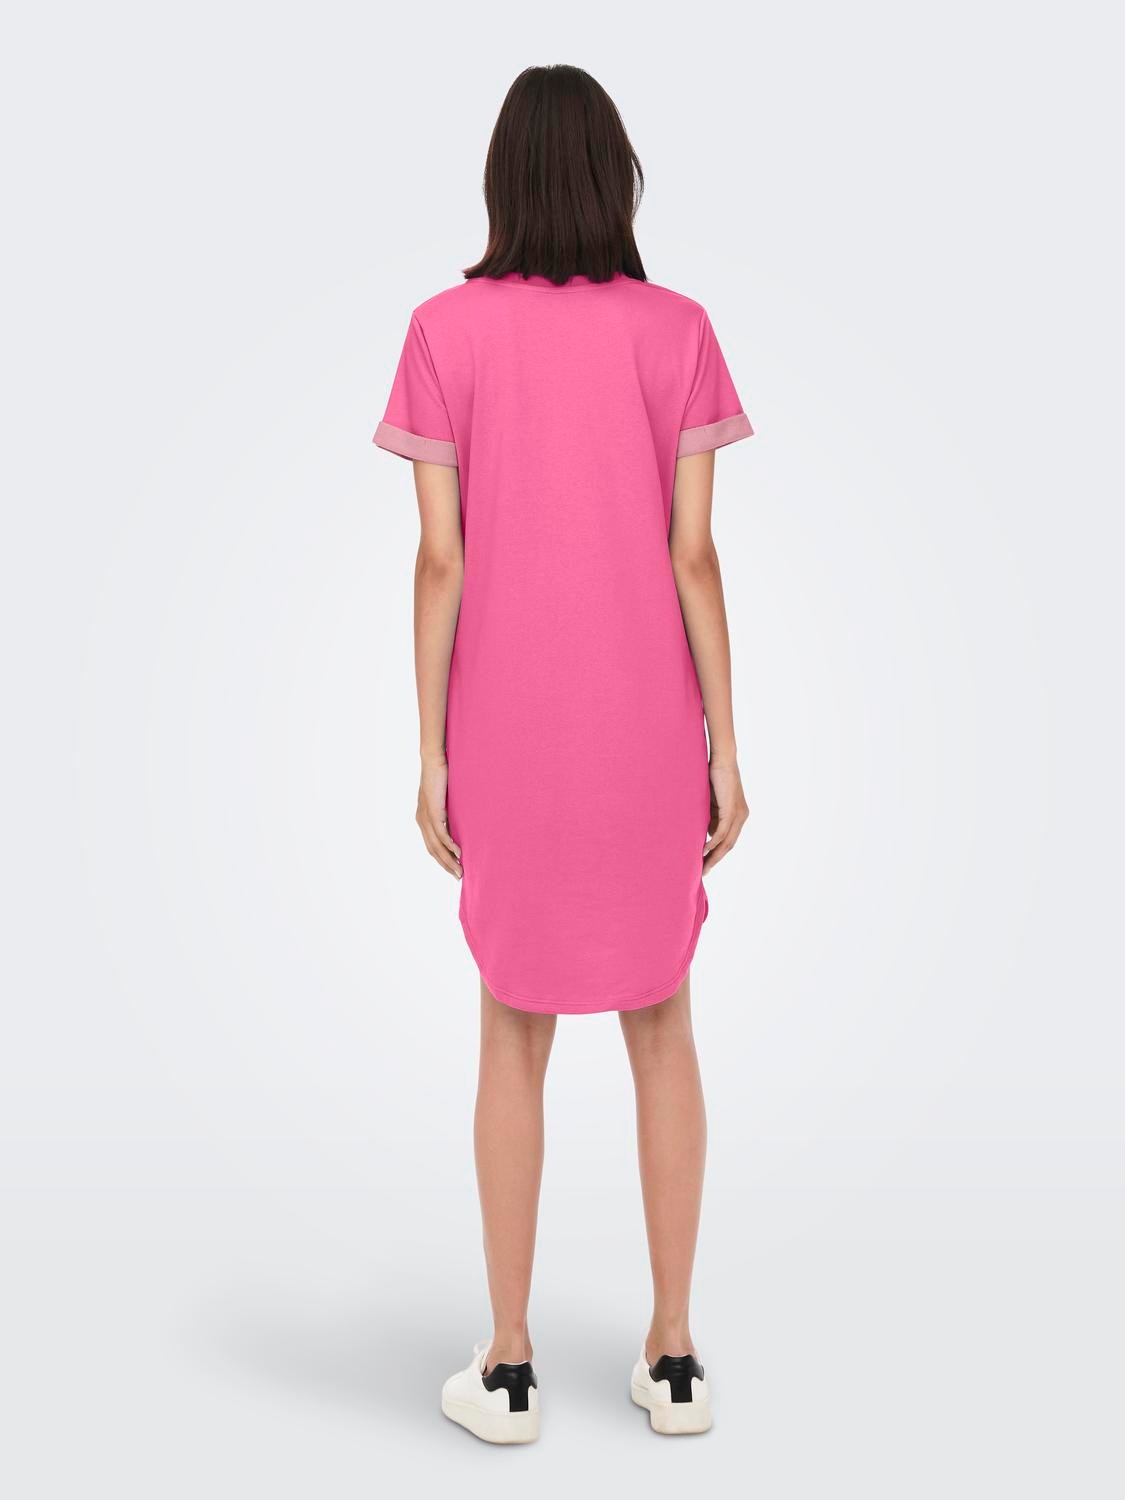 ONLY Normal geschnitten Rundhals Kurzes Kleid -Shocking Pink - 15174793